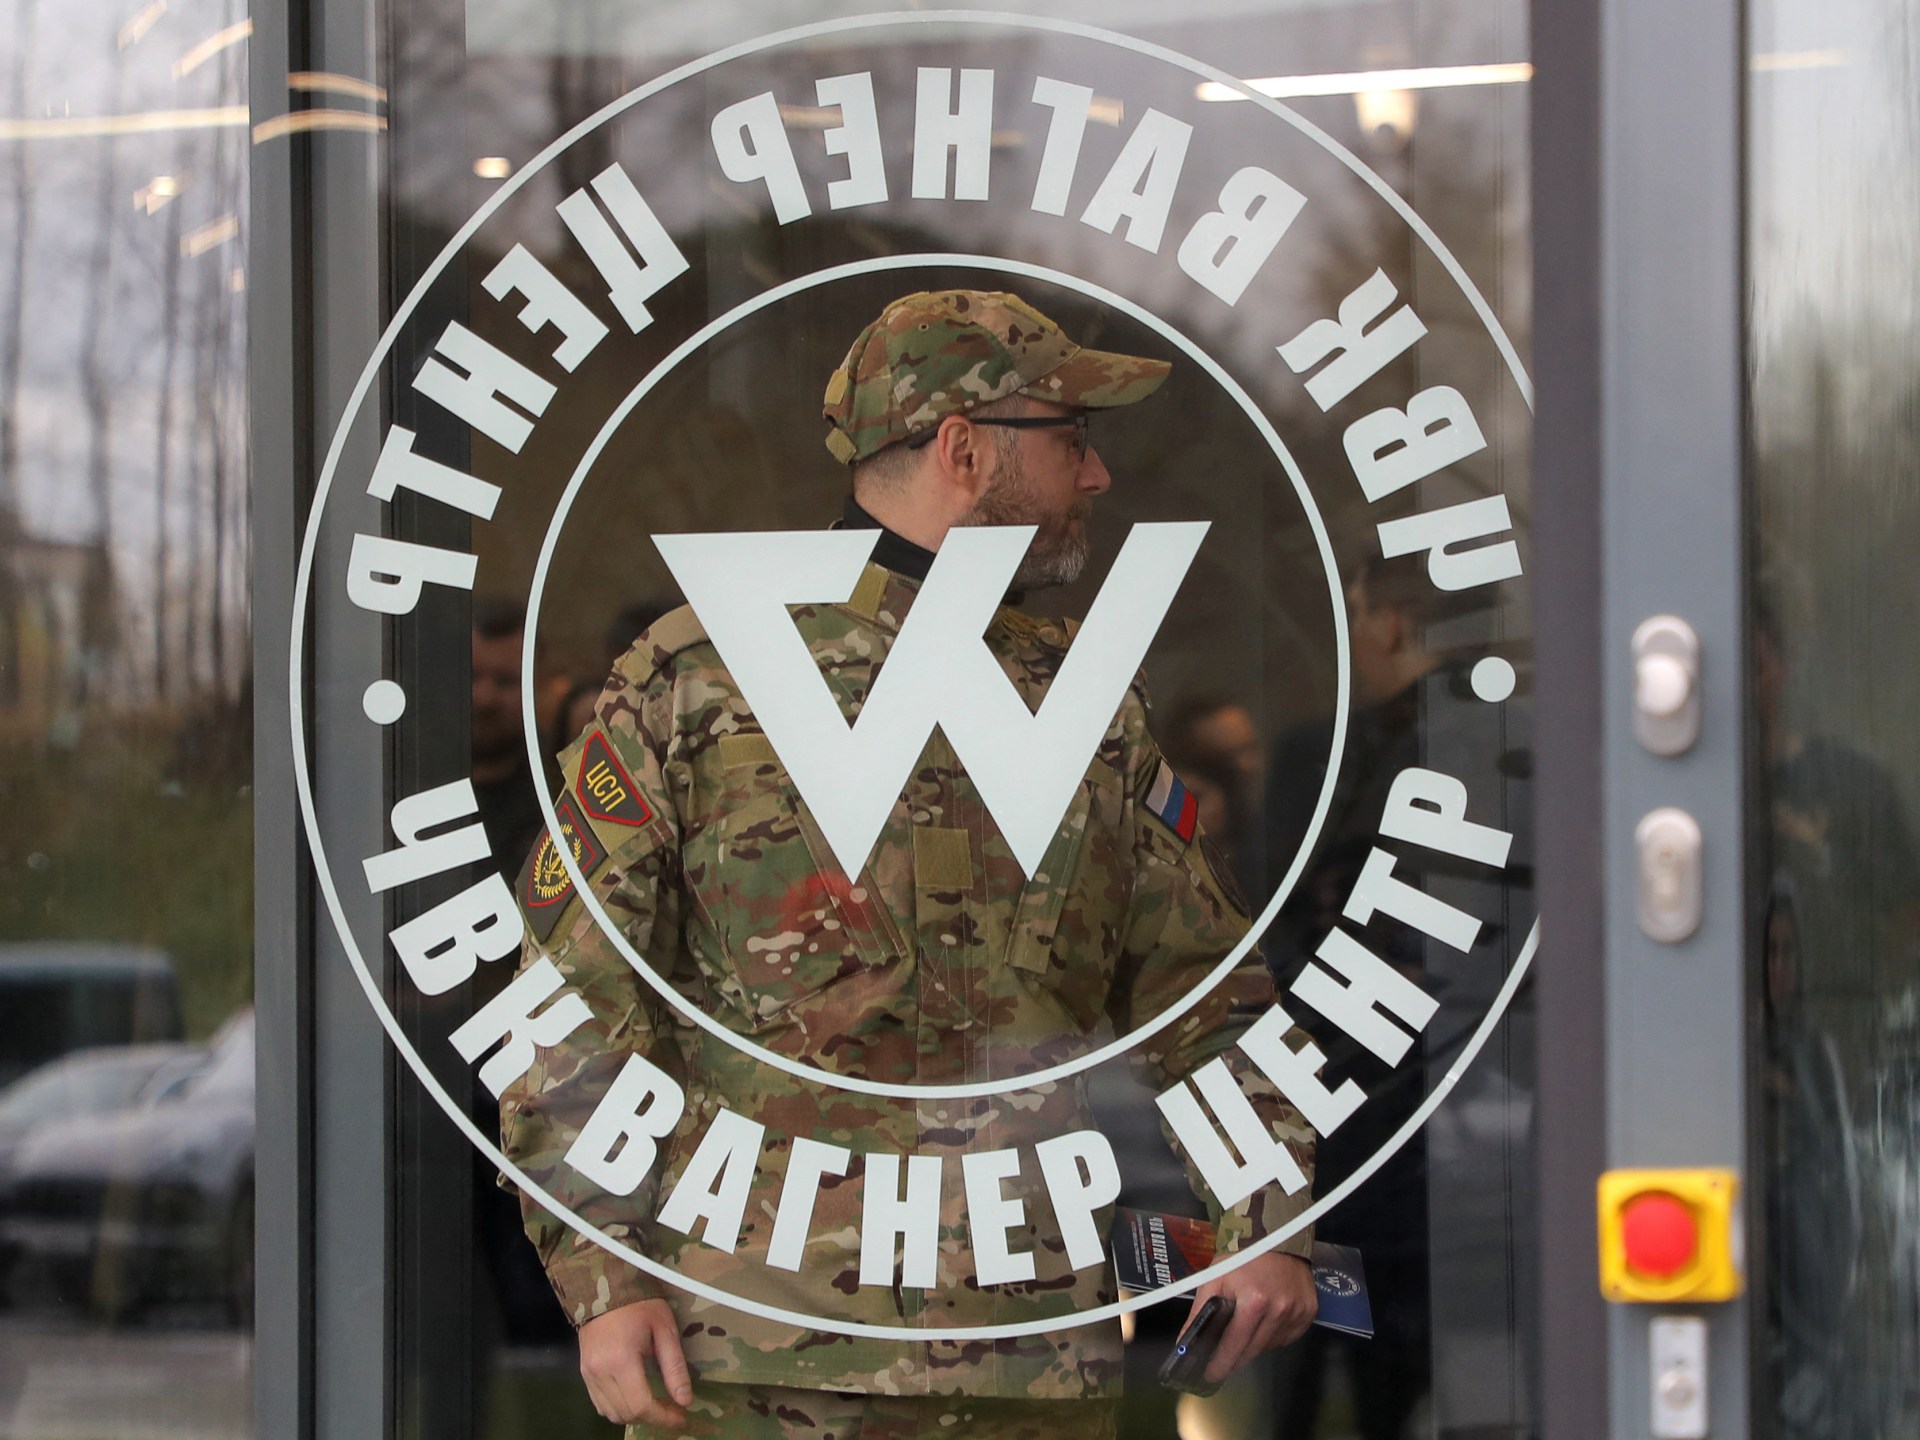 Ruská žoldnéřská síla Wagner otevírá své první oficiální velitelství |  válečné zprávy mezi Ruskem a Ukrajinou